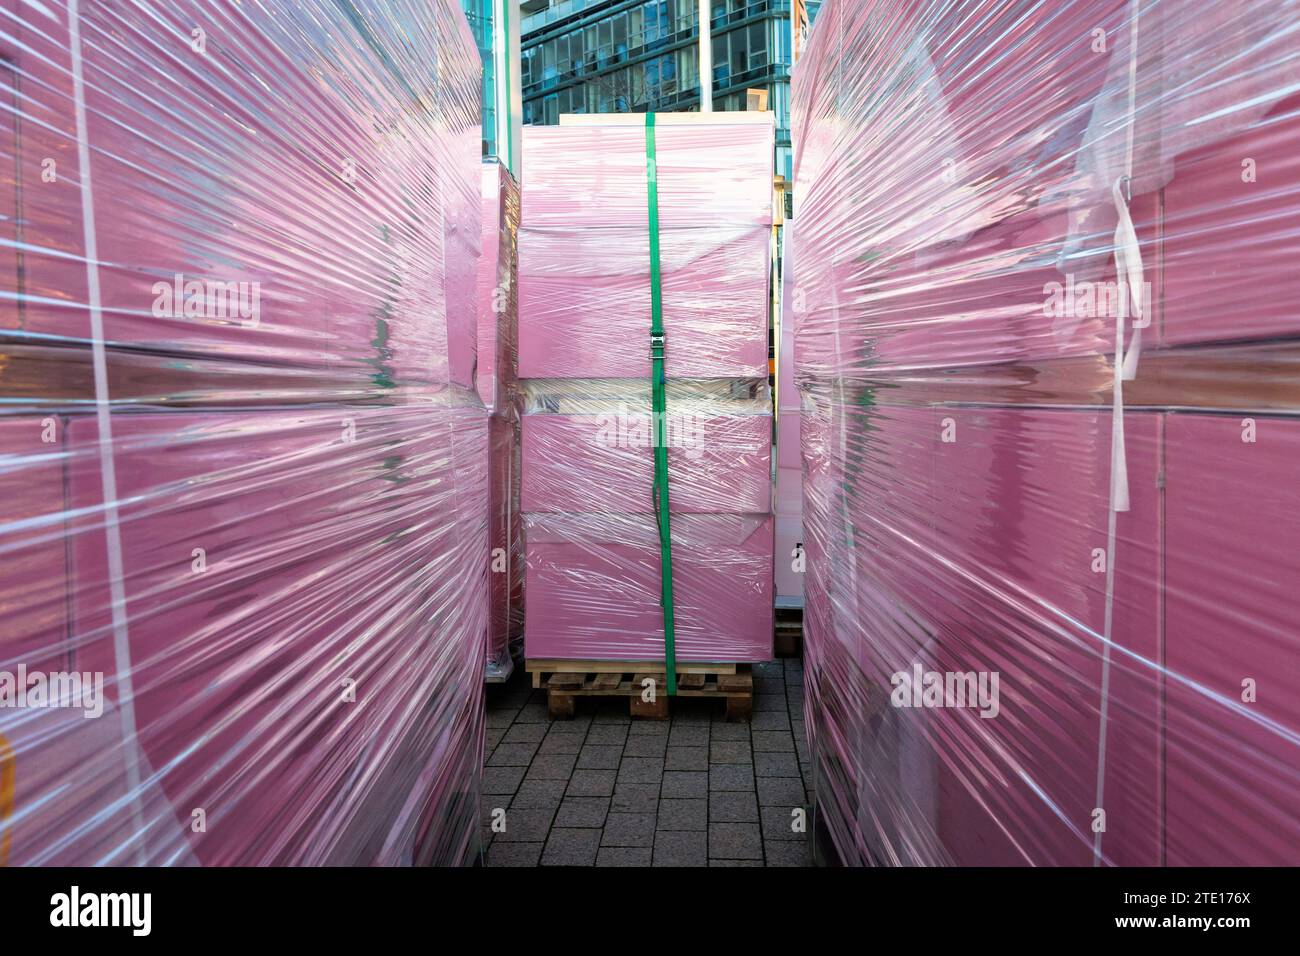 Scatole rosa avvolte in fogli di alluminio su pallet per il trasporto, Colonia, Germania. A Folie eingepackte rosa Kisten stehen auf Paletten zum Abtransport, Koel Foto Stock